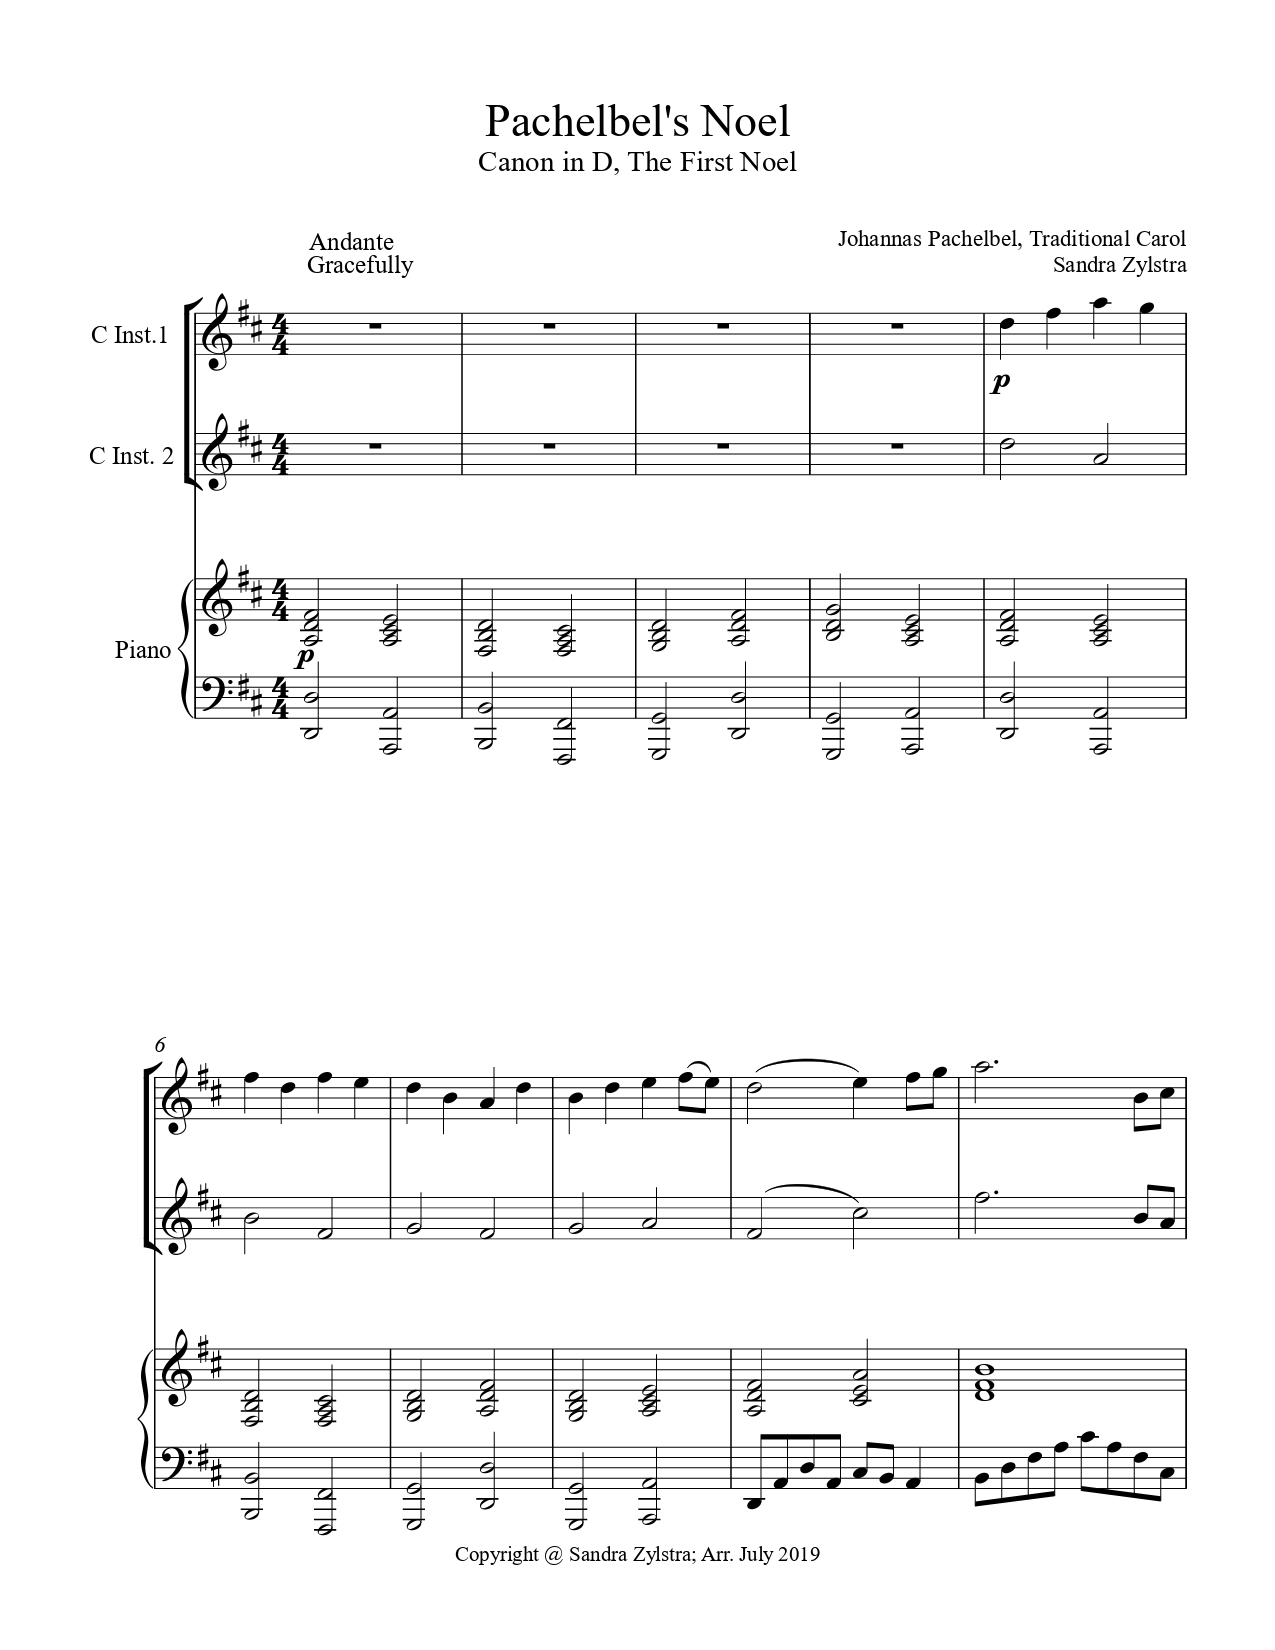 Pachelbels Noel treble C instrument duet parts cover page 00021